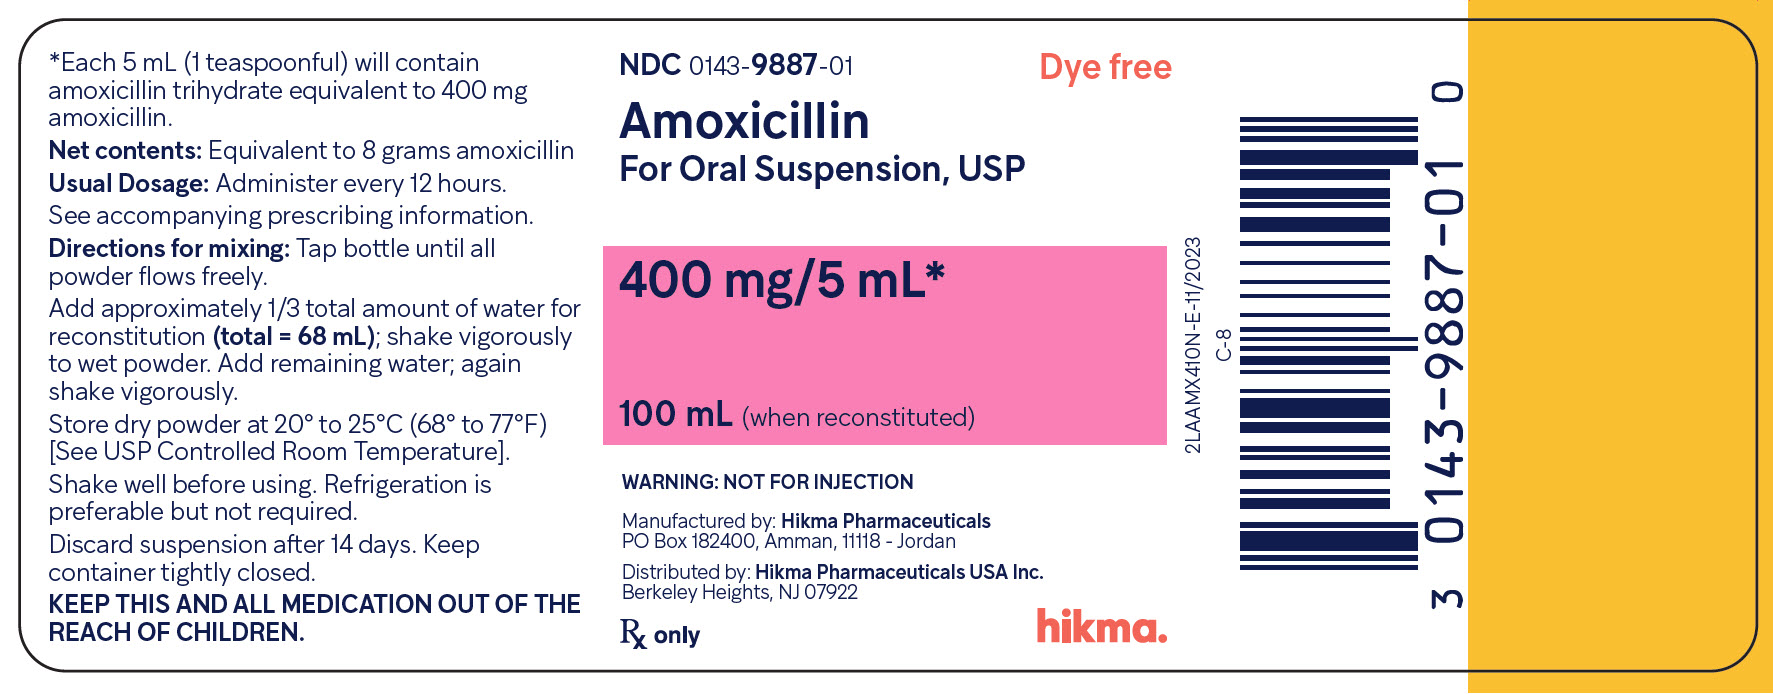 Amoxicillin OS 400 mg/5 mL (100 mL) bottle label image